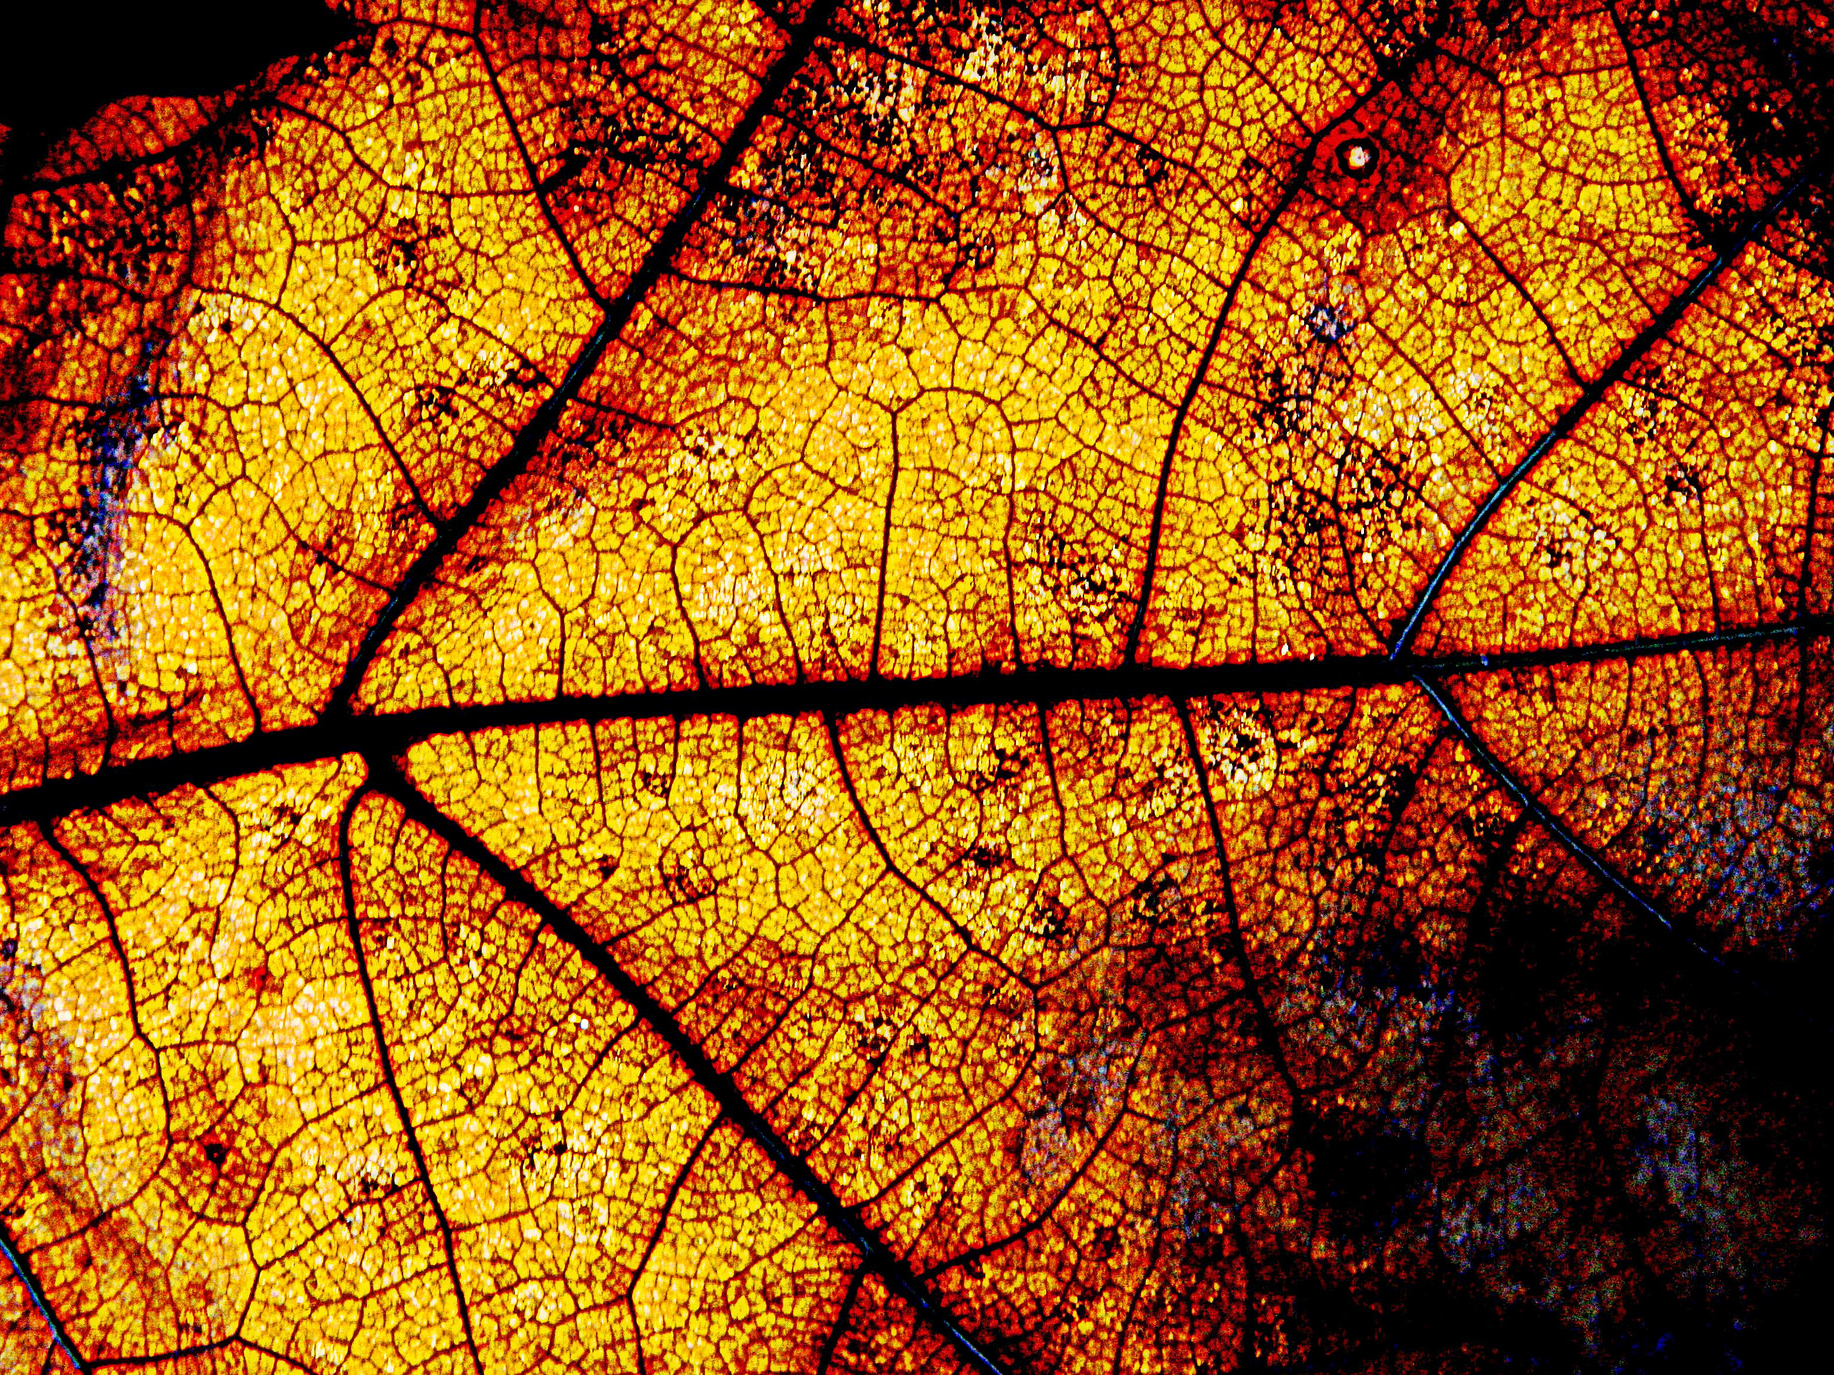 "Leaf" Photo by Dabinsi CC BY 2.0